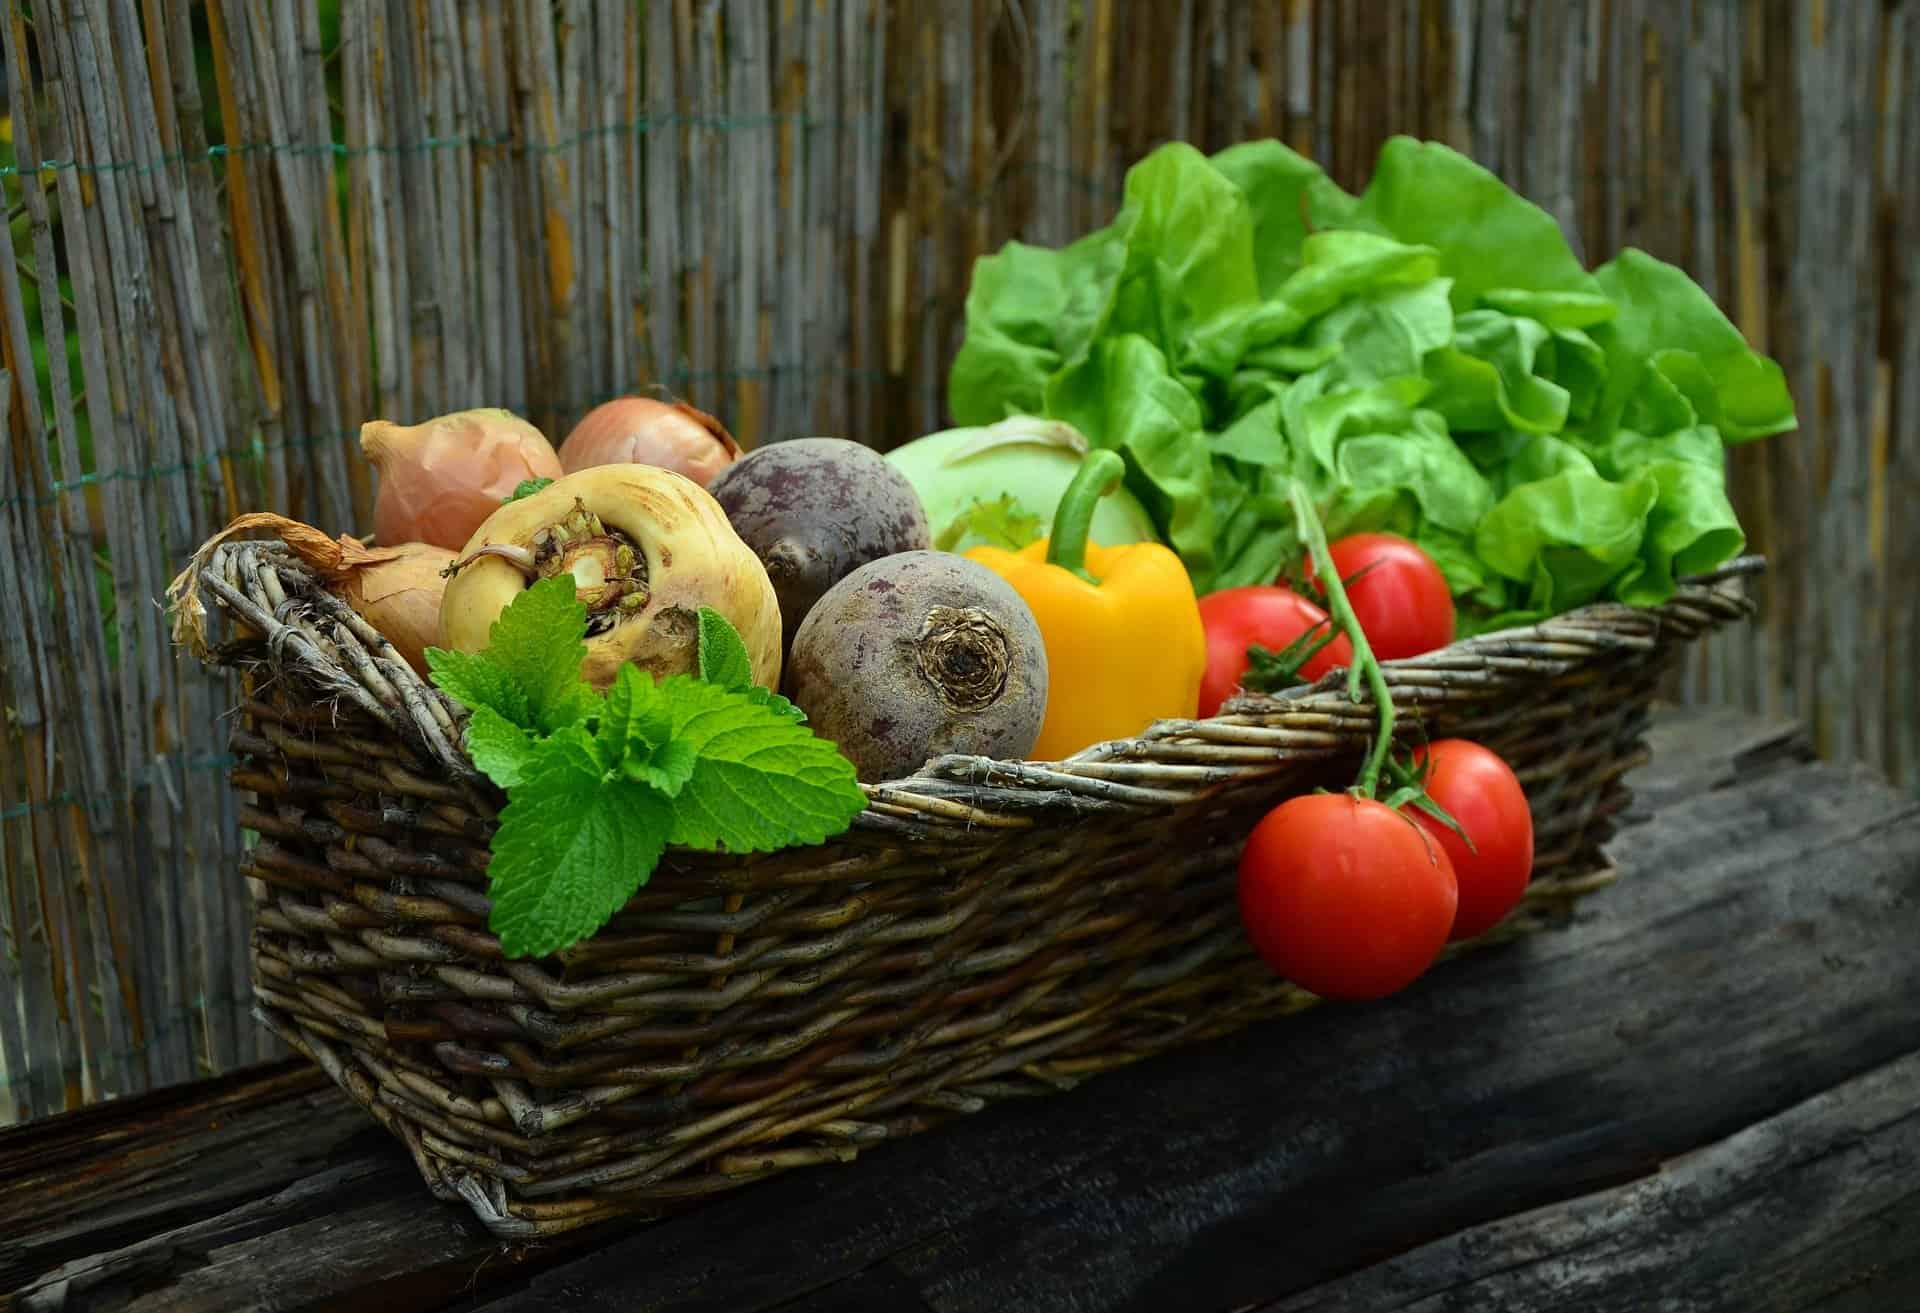 ogrody społeczne wrocław ogrodki działkowe uprawa warzyw